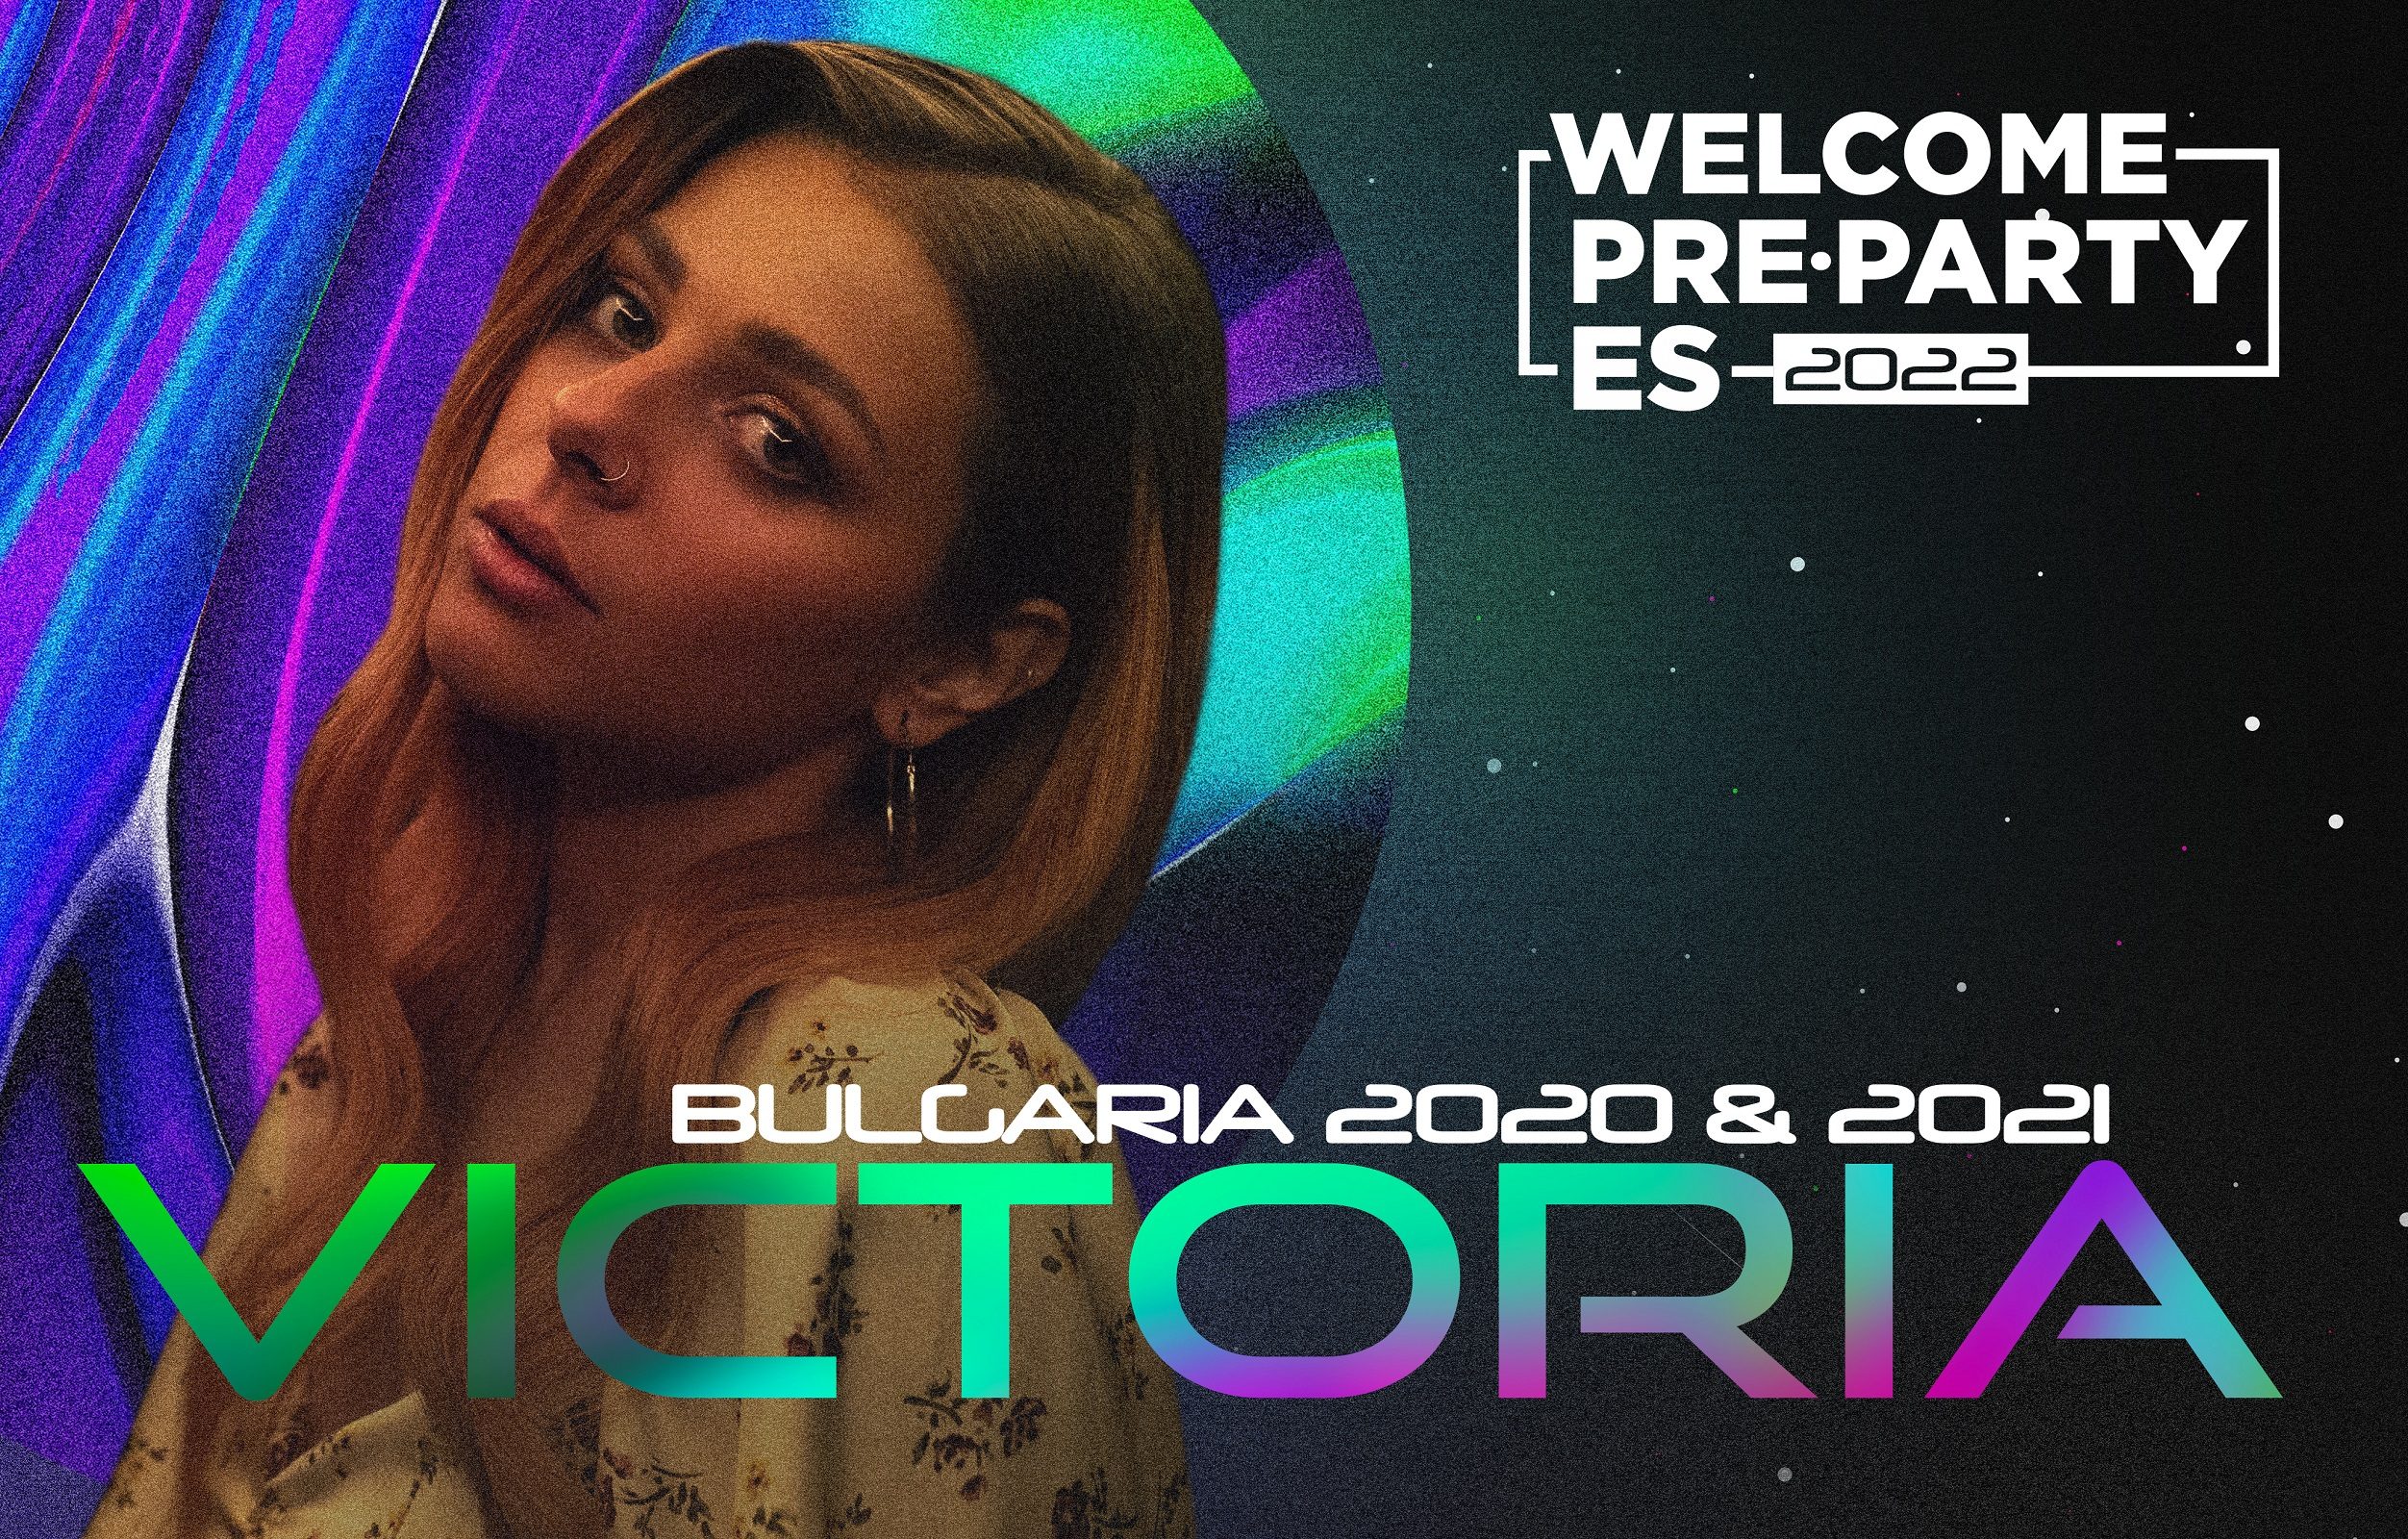 La búlgara Victoria cantará en la Welcome PrePartyES 2022 en la que se homenajeará a los artistas de Eurovisión 2020 y 2021